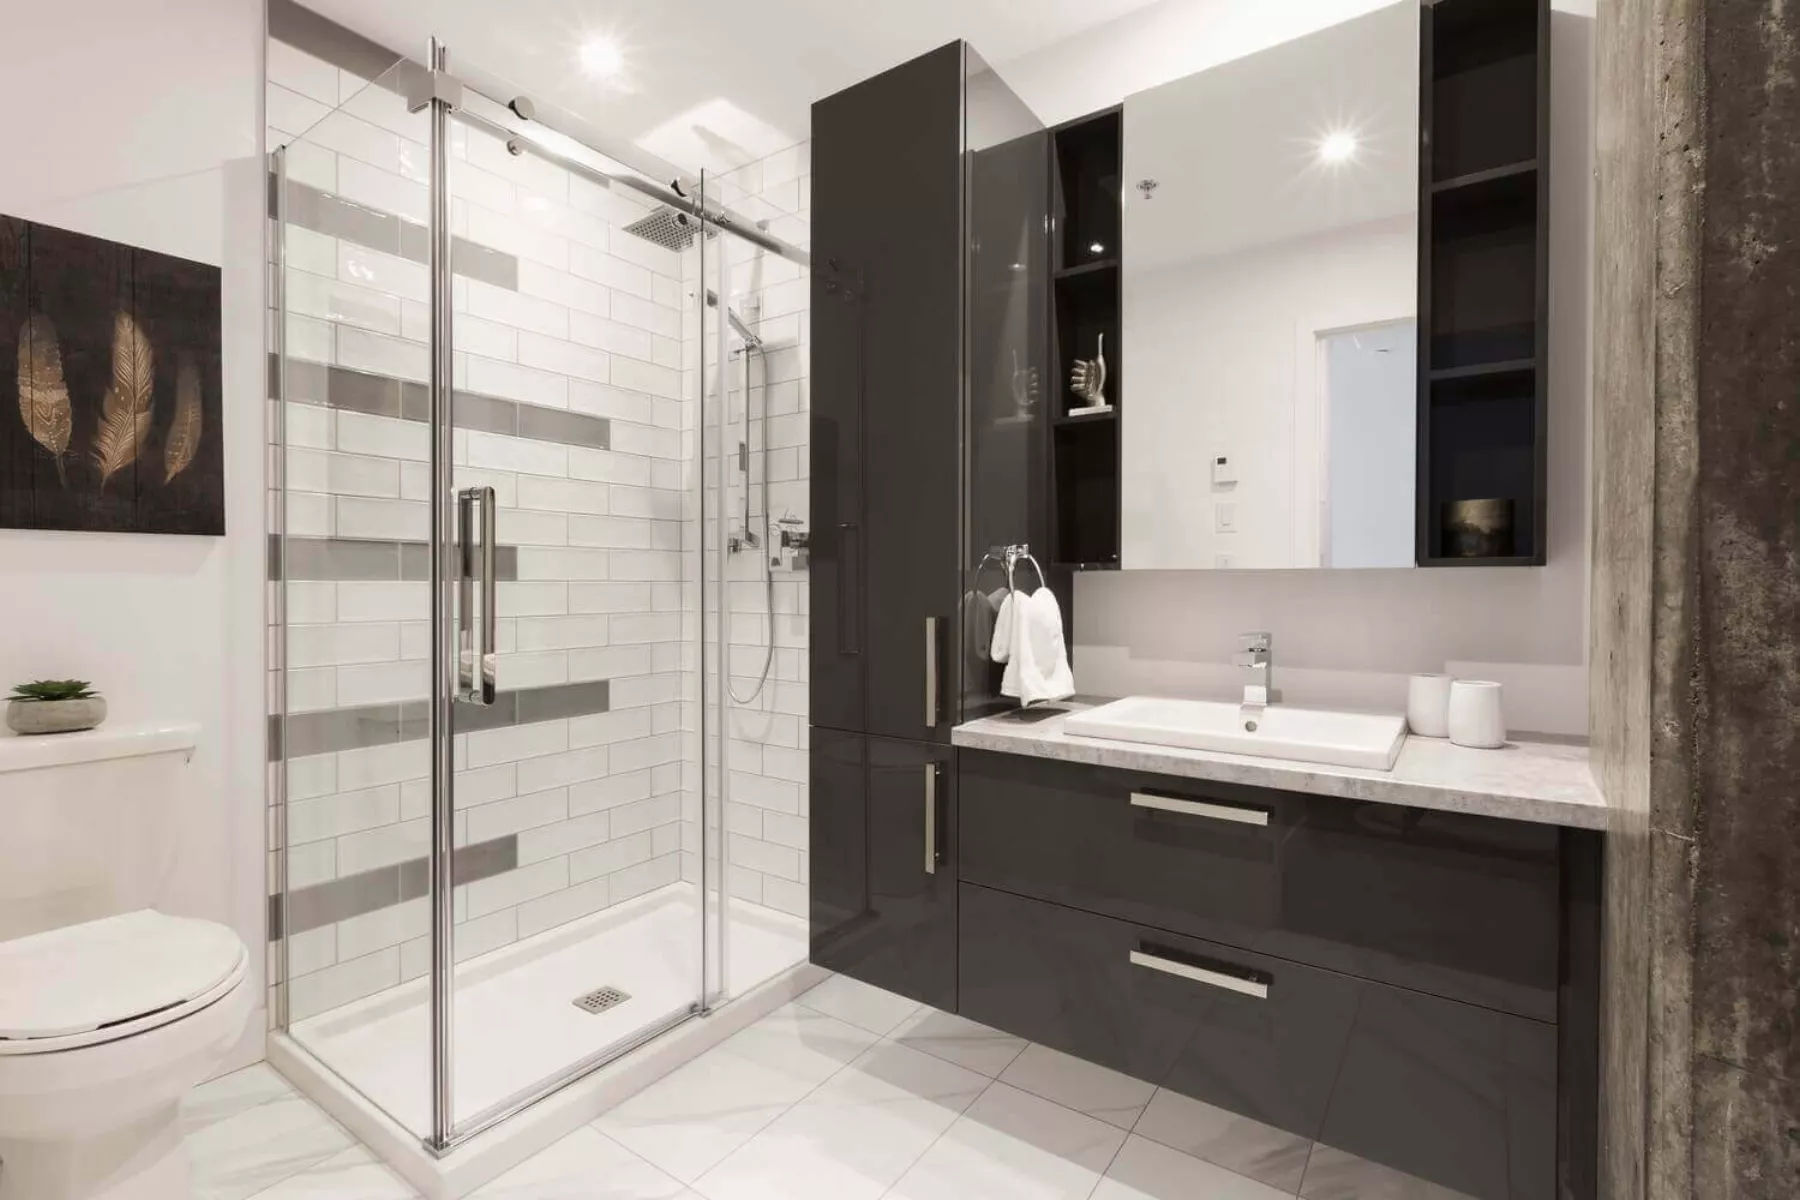 Loft - Salle de bain avec douche en céramique et porte vitrée